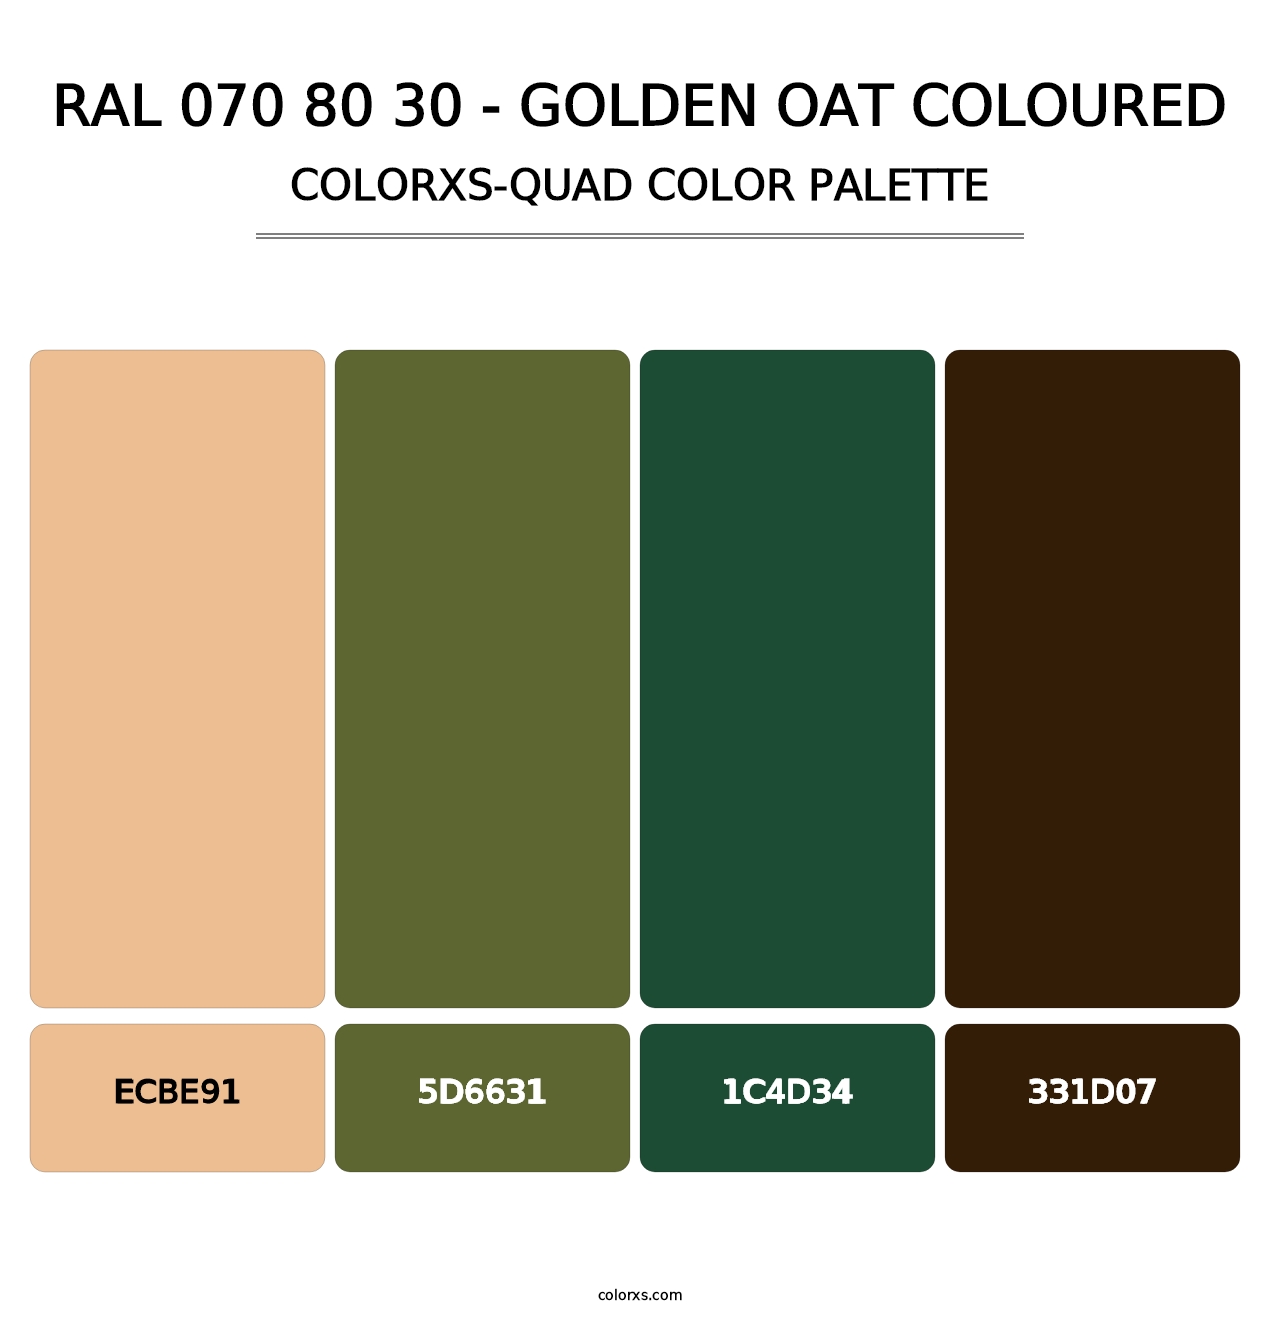 RAL 070 80 30 - Golden Oat Coloured - Colorxs Quad Palette